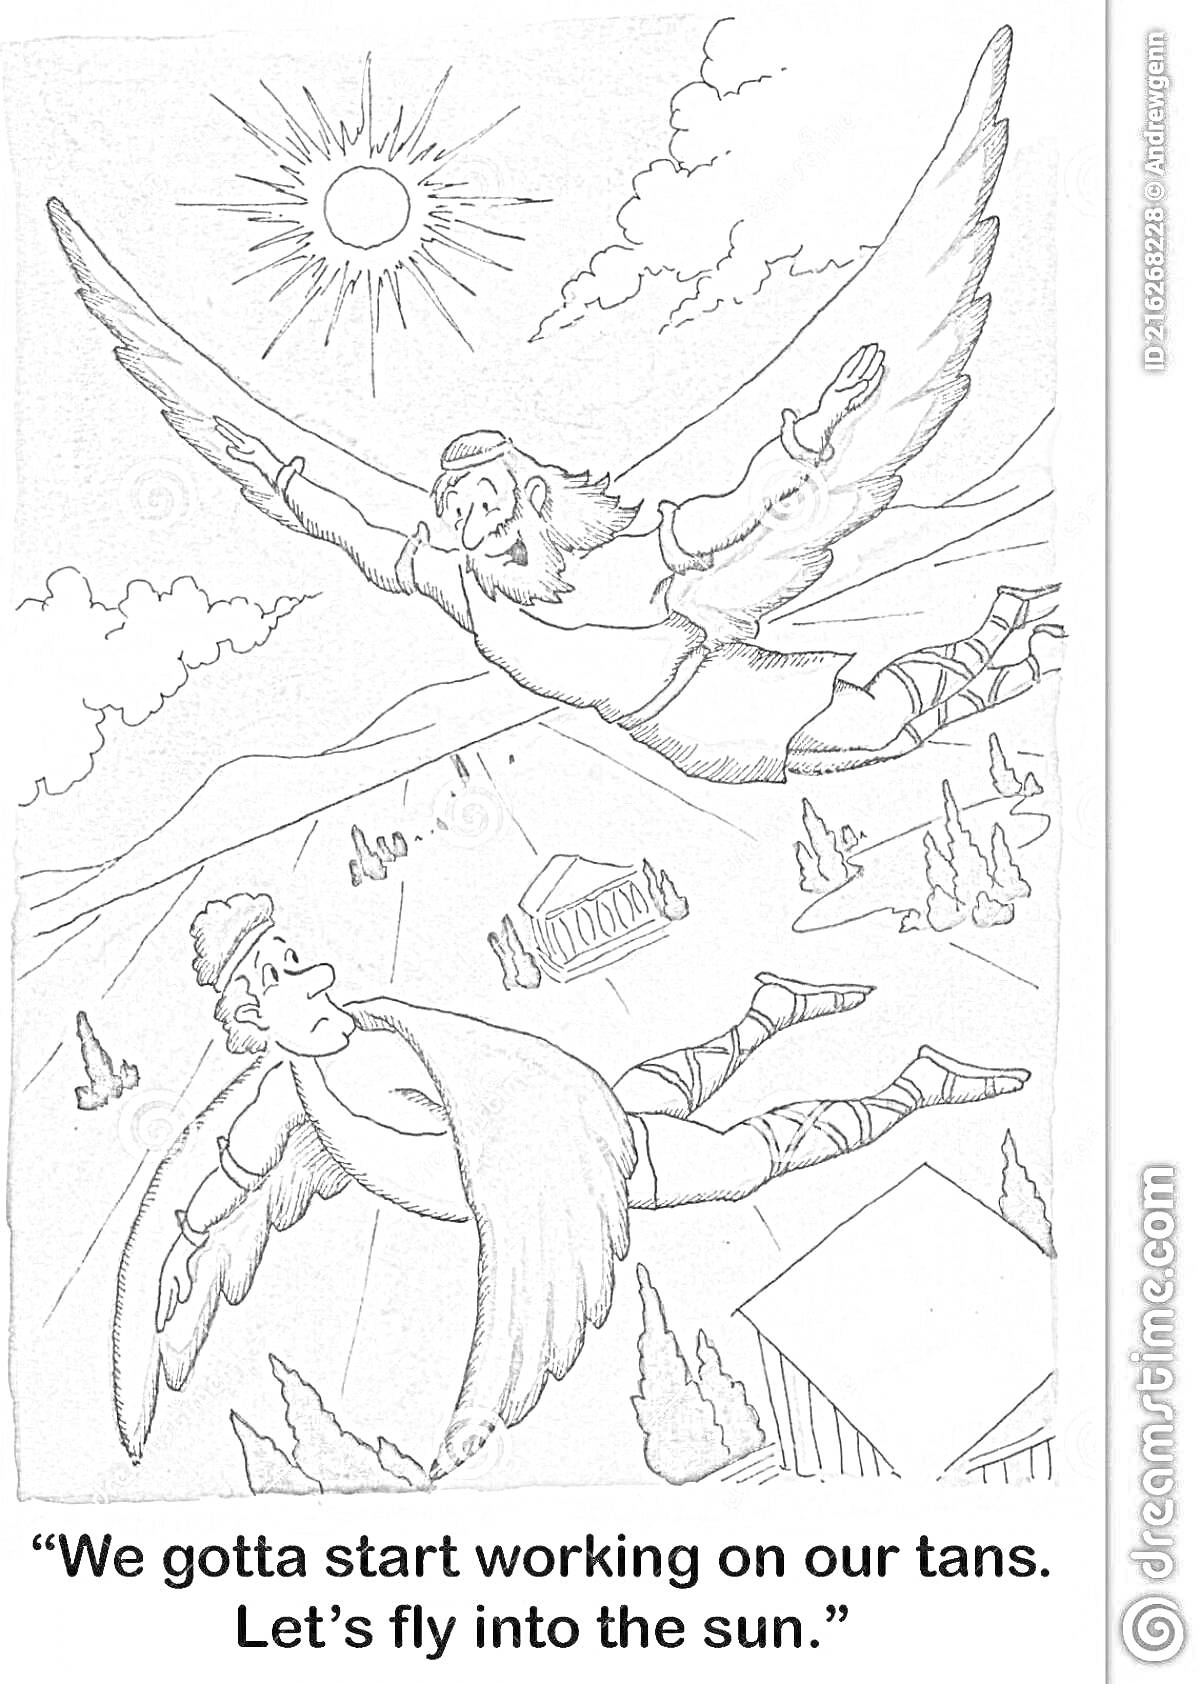 РаскраскаДедал и Икар, летящие с крыльями, солнце на заднем плане, деревья и здания внизу, облака